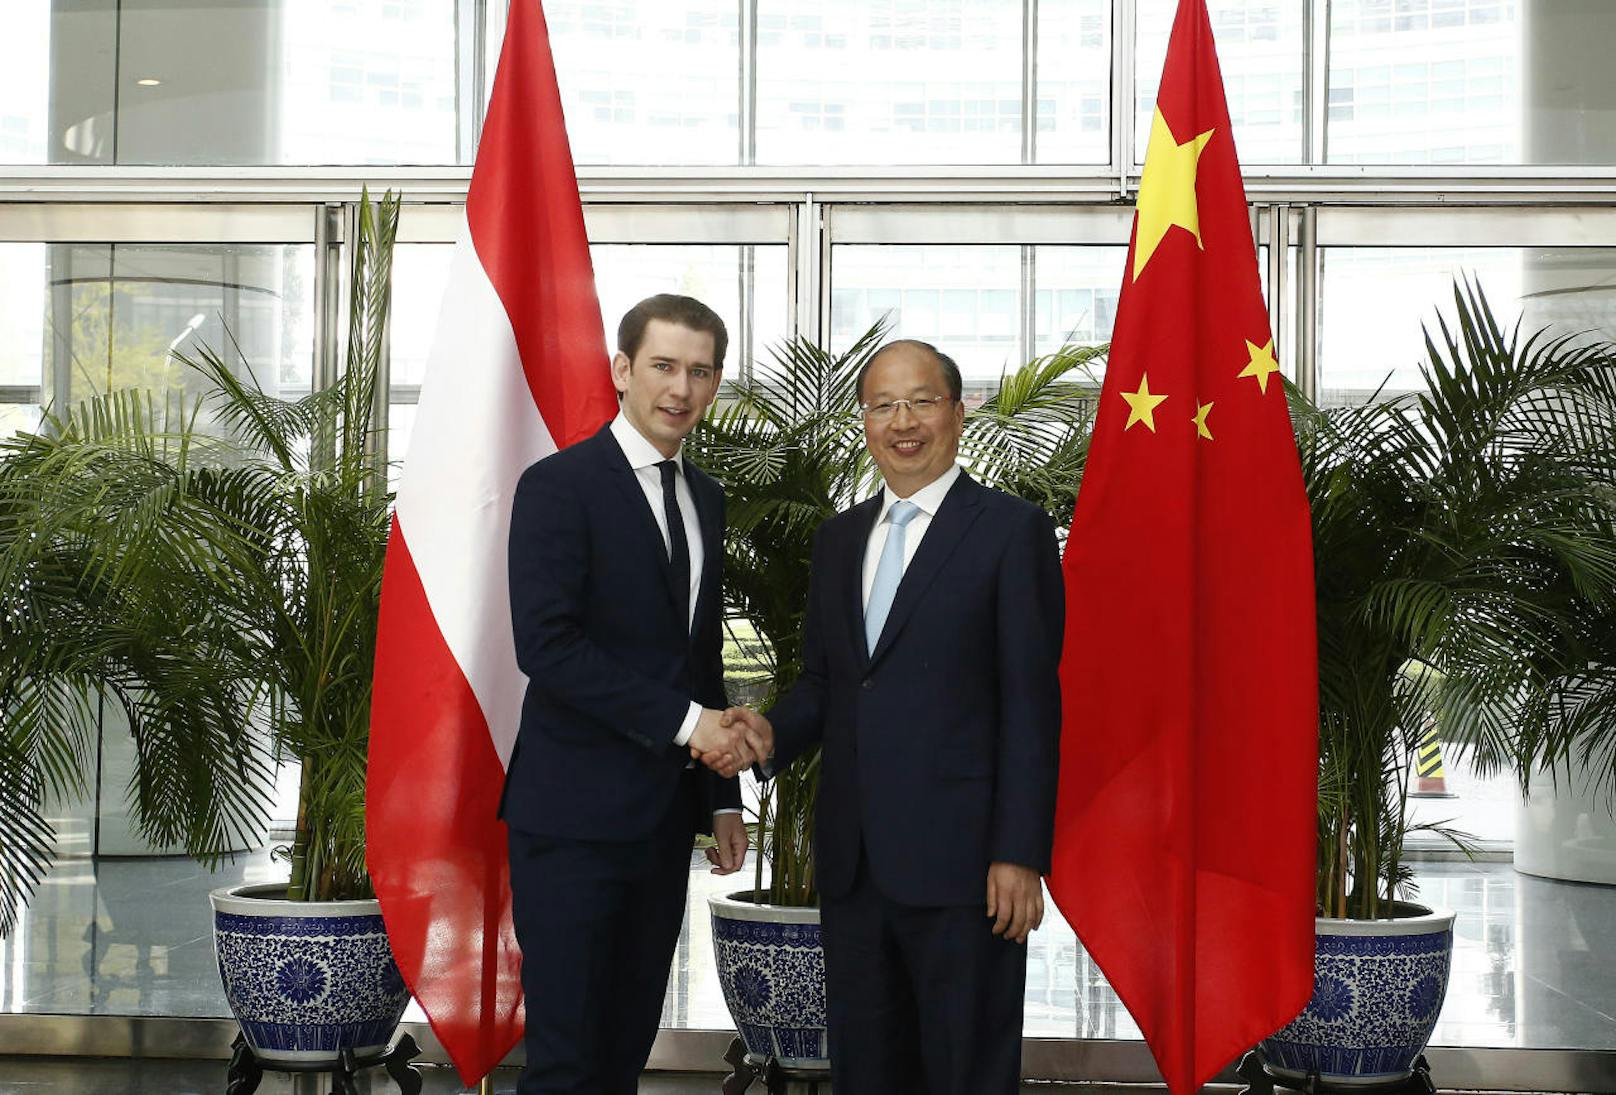 Bundeskanzler Sebastian Kurz (links) und Chairman Yi Huiman bei einem Besuch der ICBC (Industrial and Commercial Bank of China) in Peking im Rahmen eines Staatsbesuches.